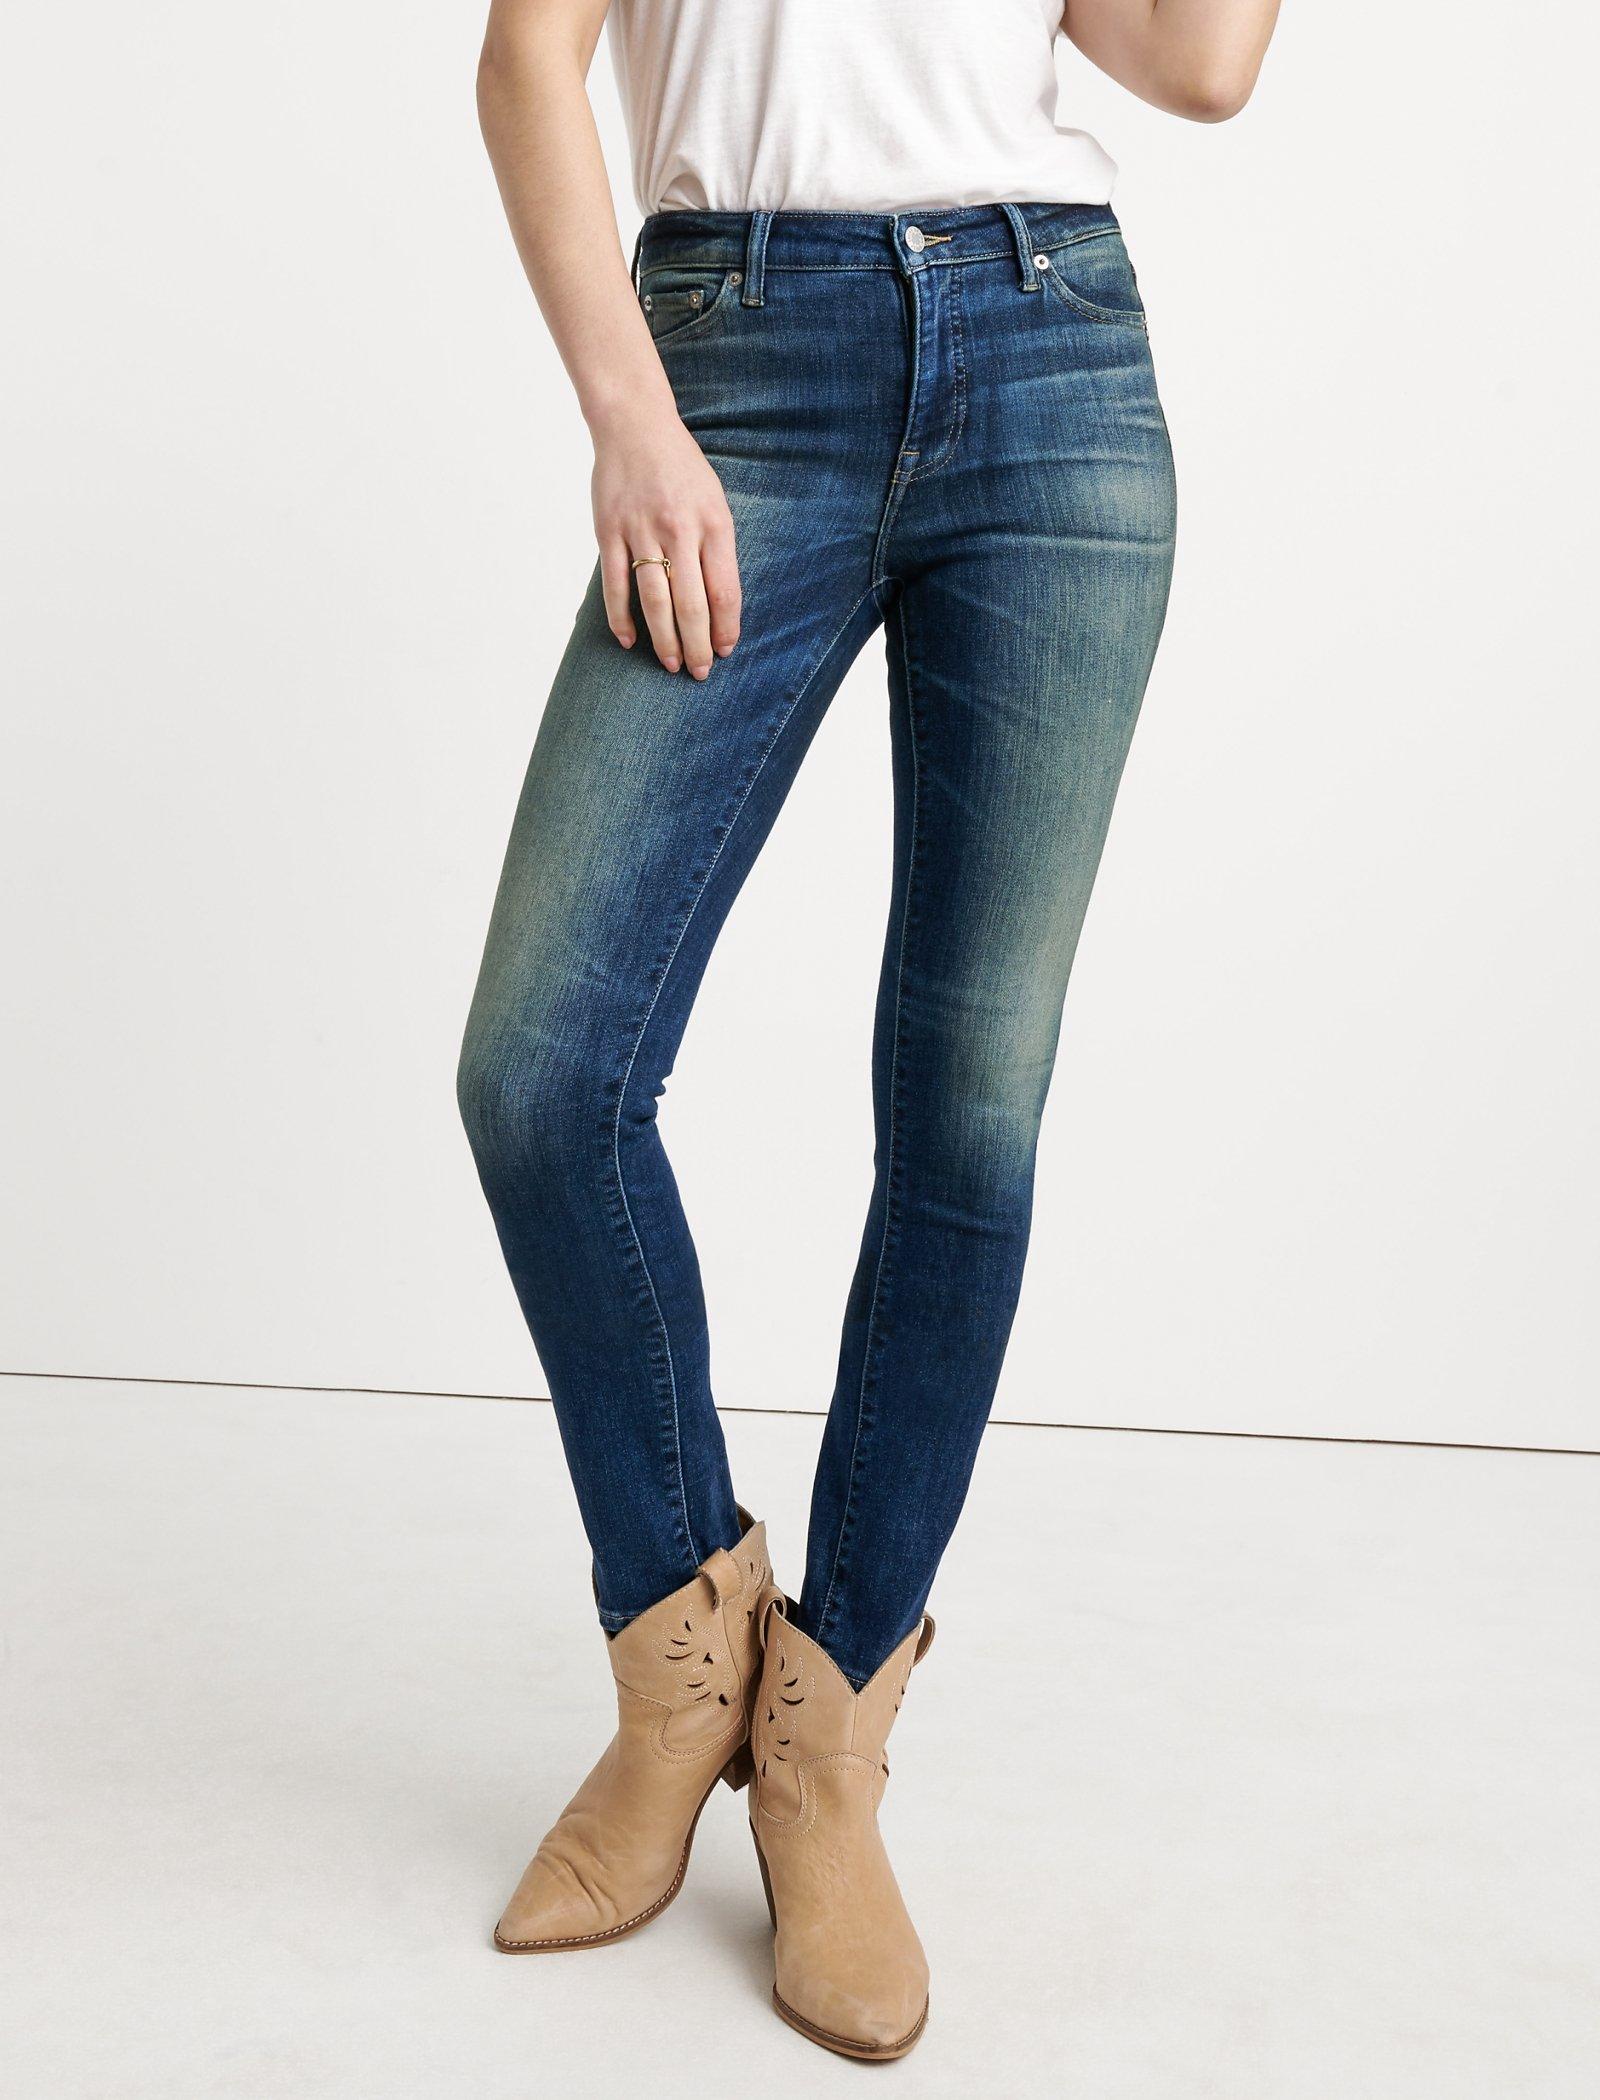 lucky jeans hayden skinny